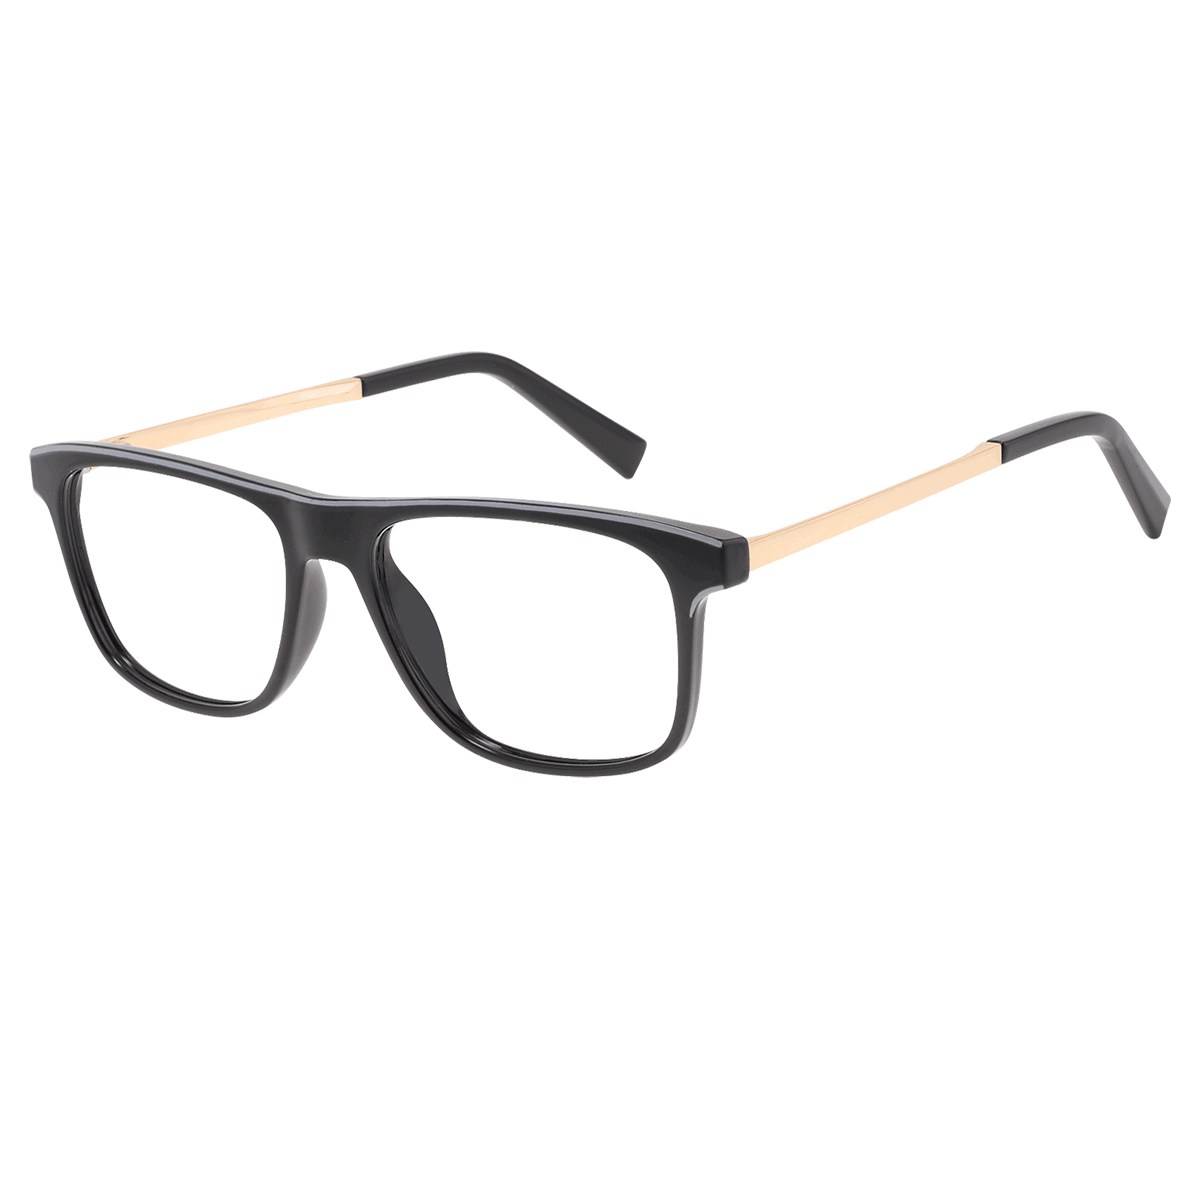 Avery - Rectangle Black-gold Reading Glasses for Men & Women